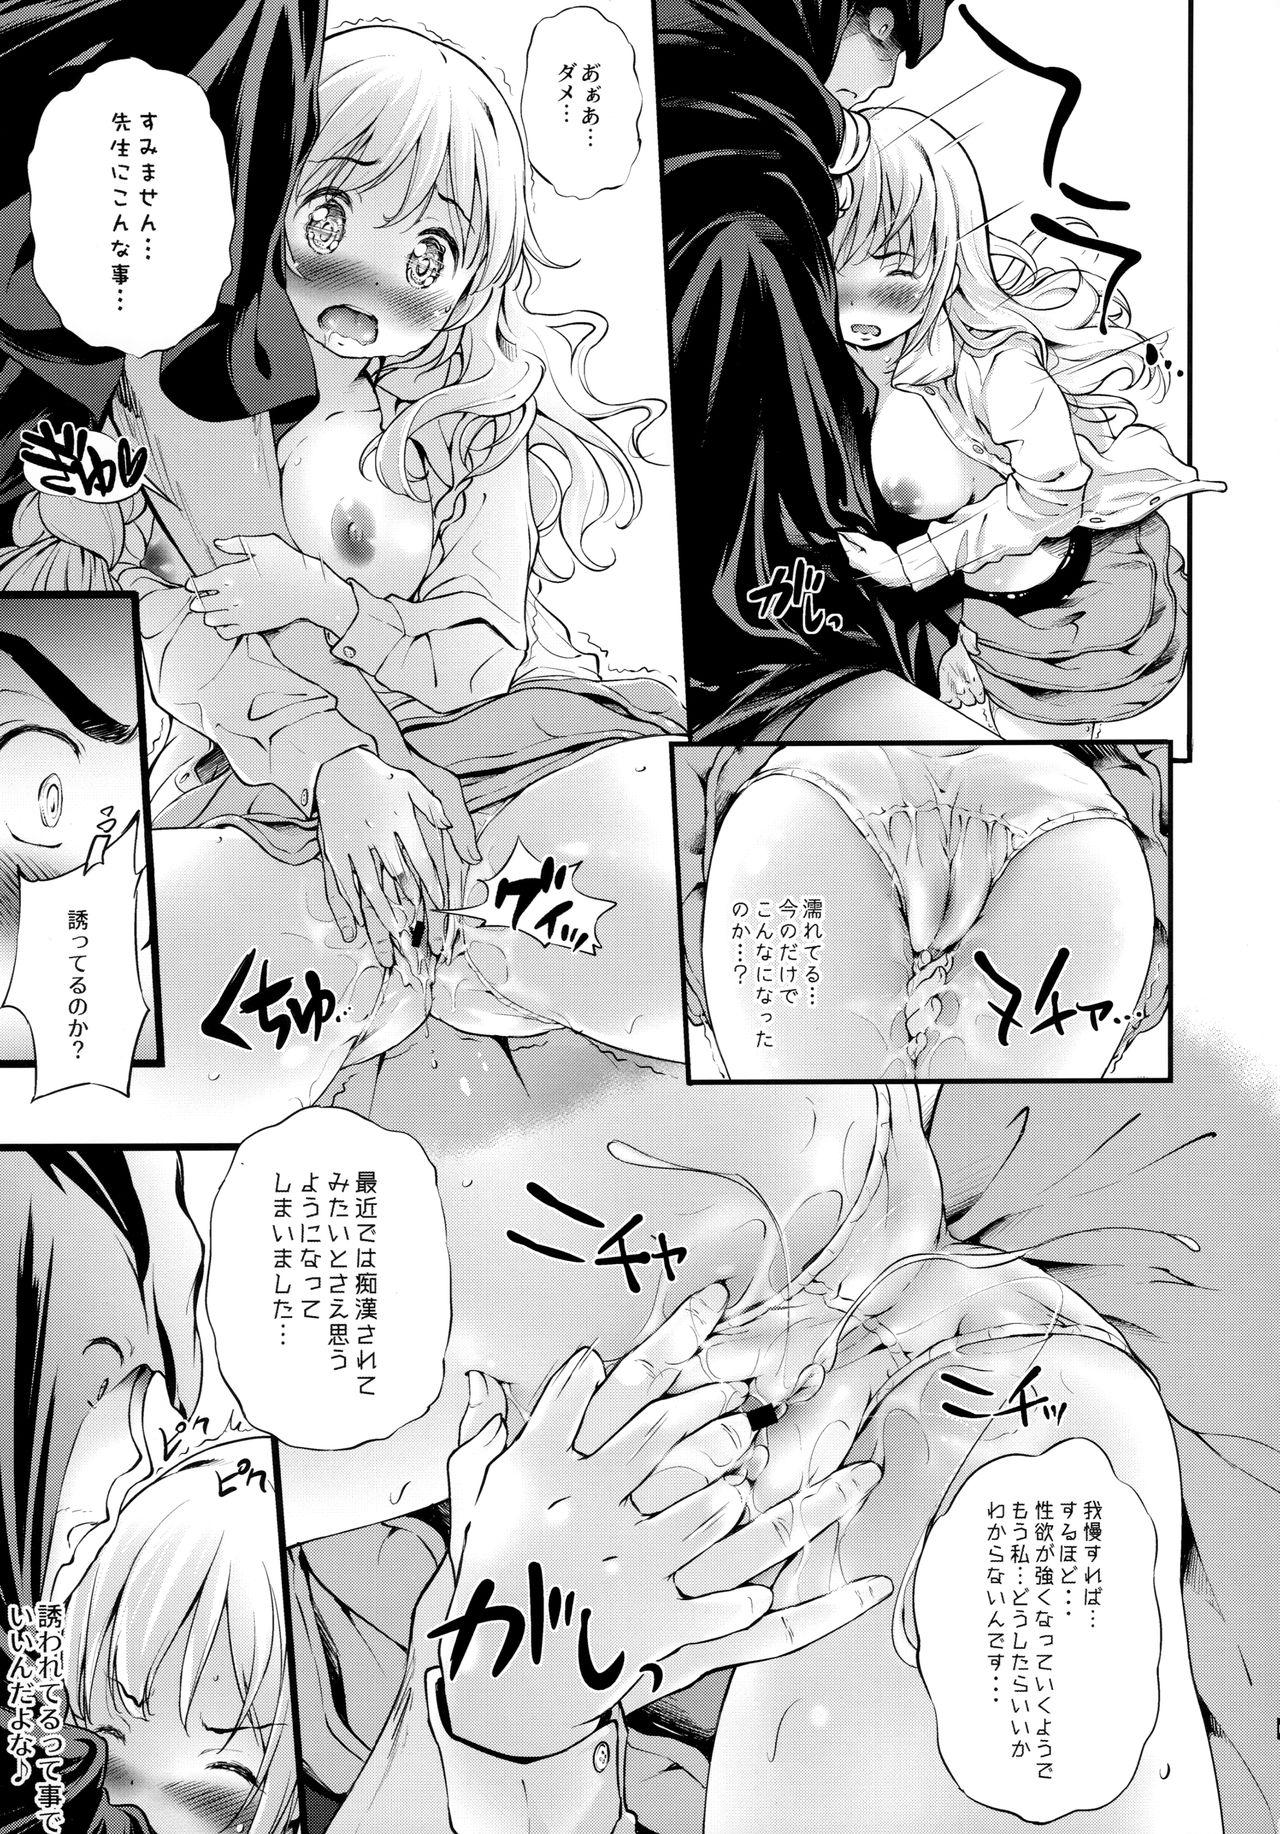 Tanned Toro Musume 21 Uranaitte Bucchake Sagida yo na? - Original Price - Page 8